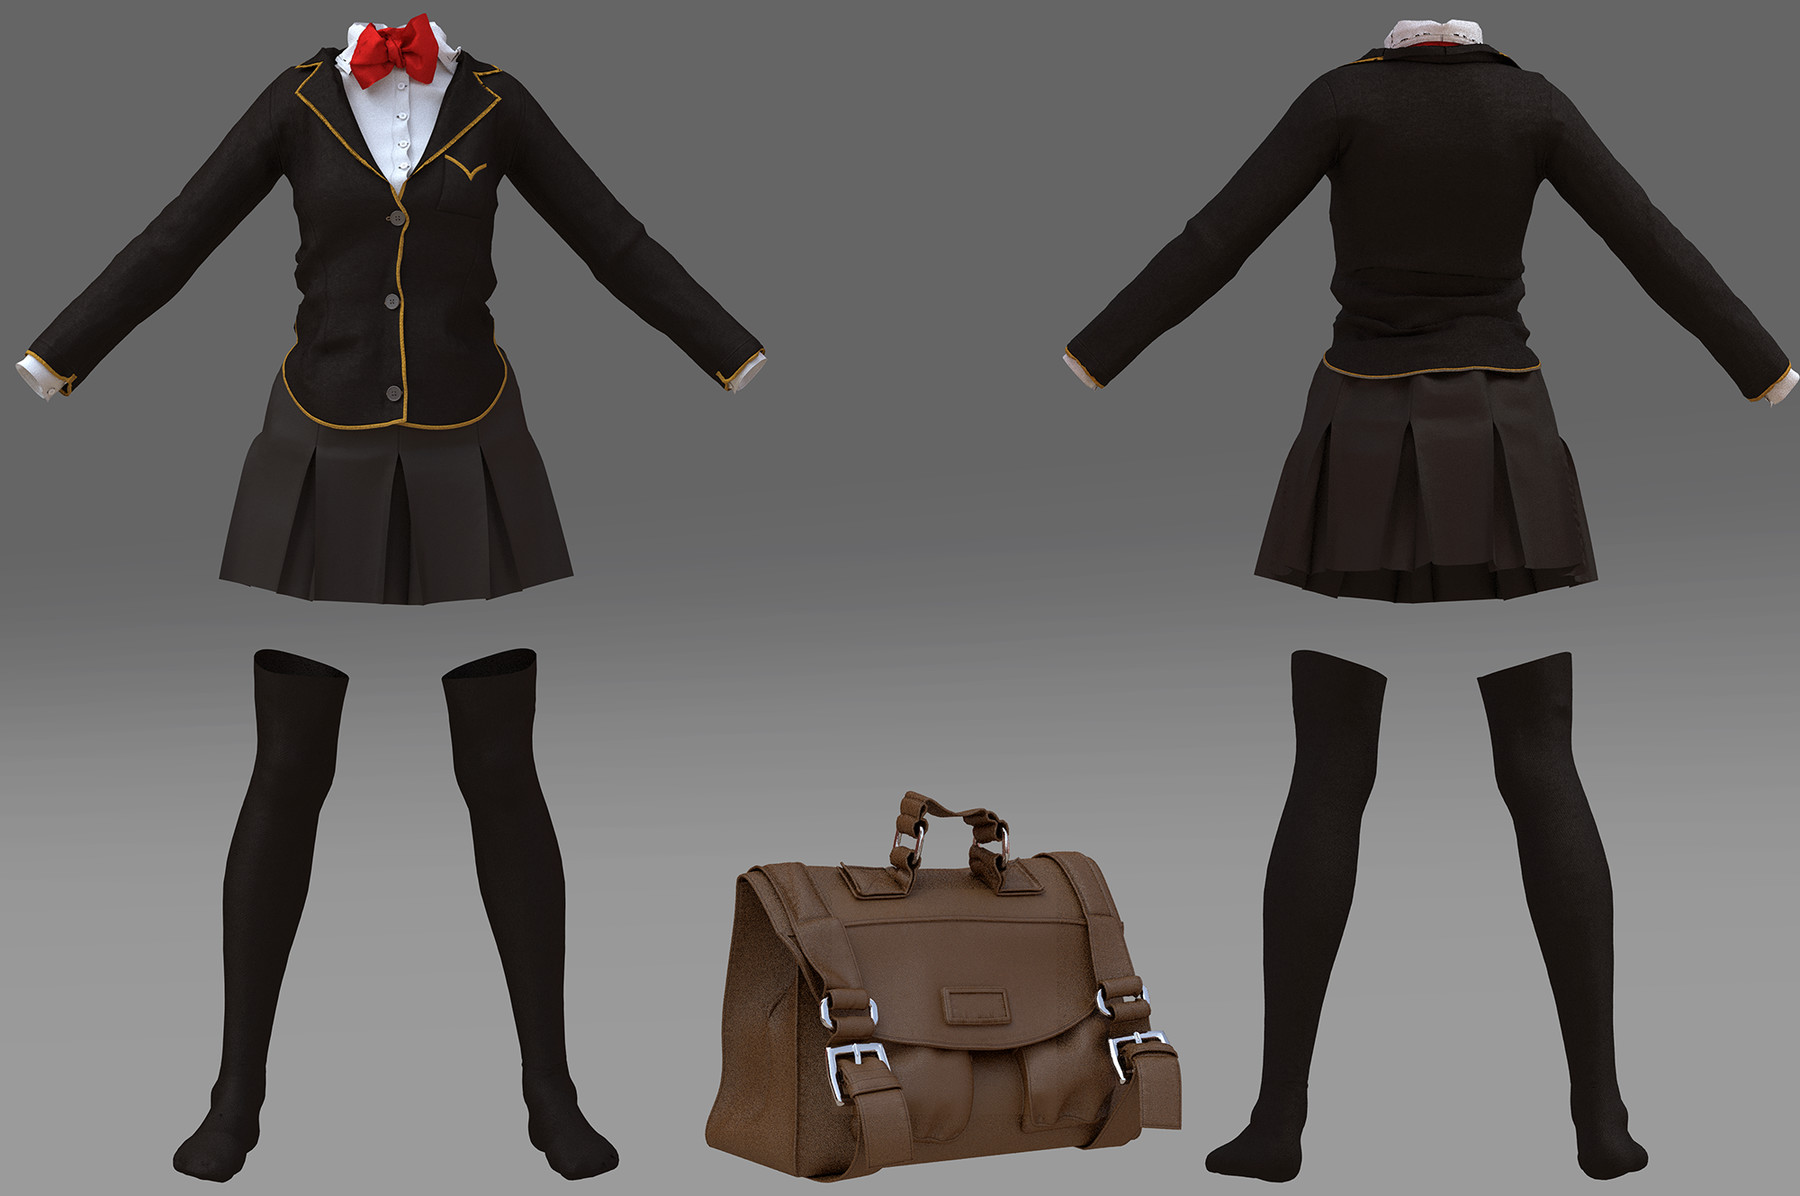 ArtStation - Marvelous designer School uniform+schoolbag | Game Assets